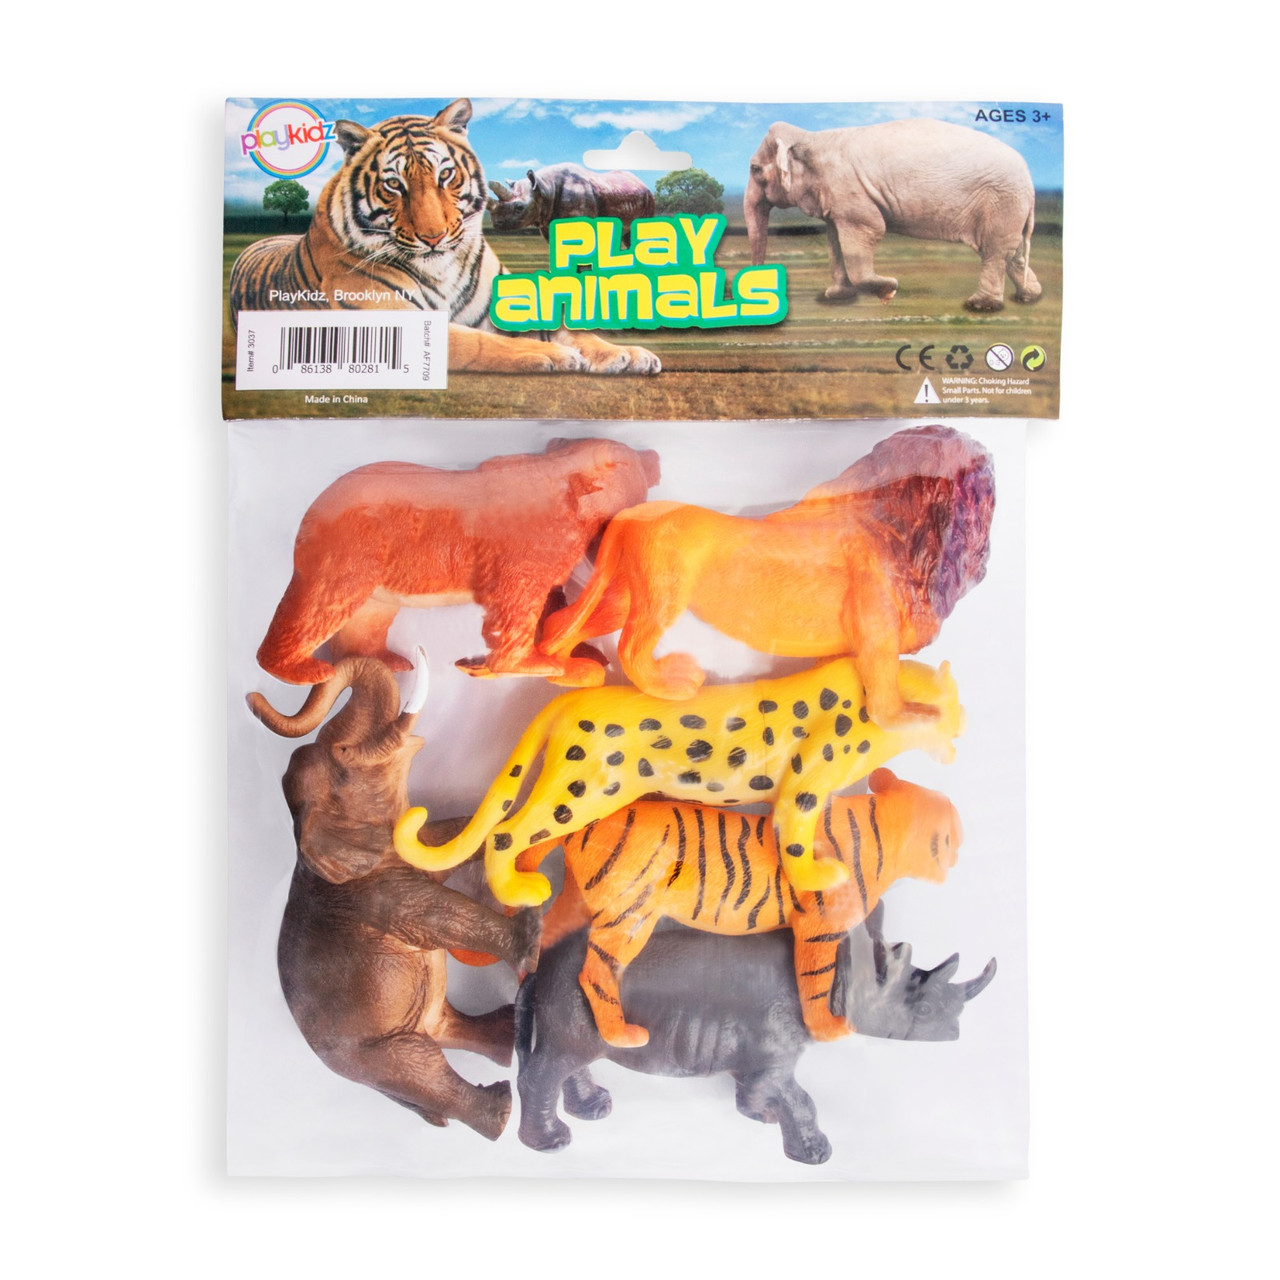 small wild animal toys